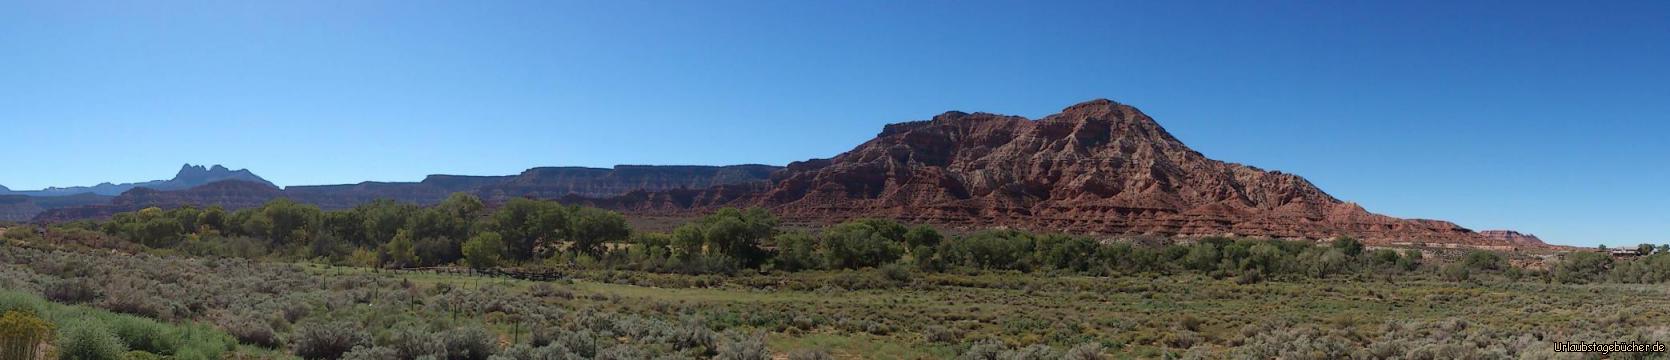 unterwegs durch Utah: schon der Weg von St. George (Utah) zum Zion-Nationalpark (ebenfalls in Utah) führt uns durch eine beeindruckende Landschaft